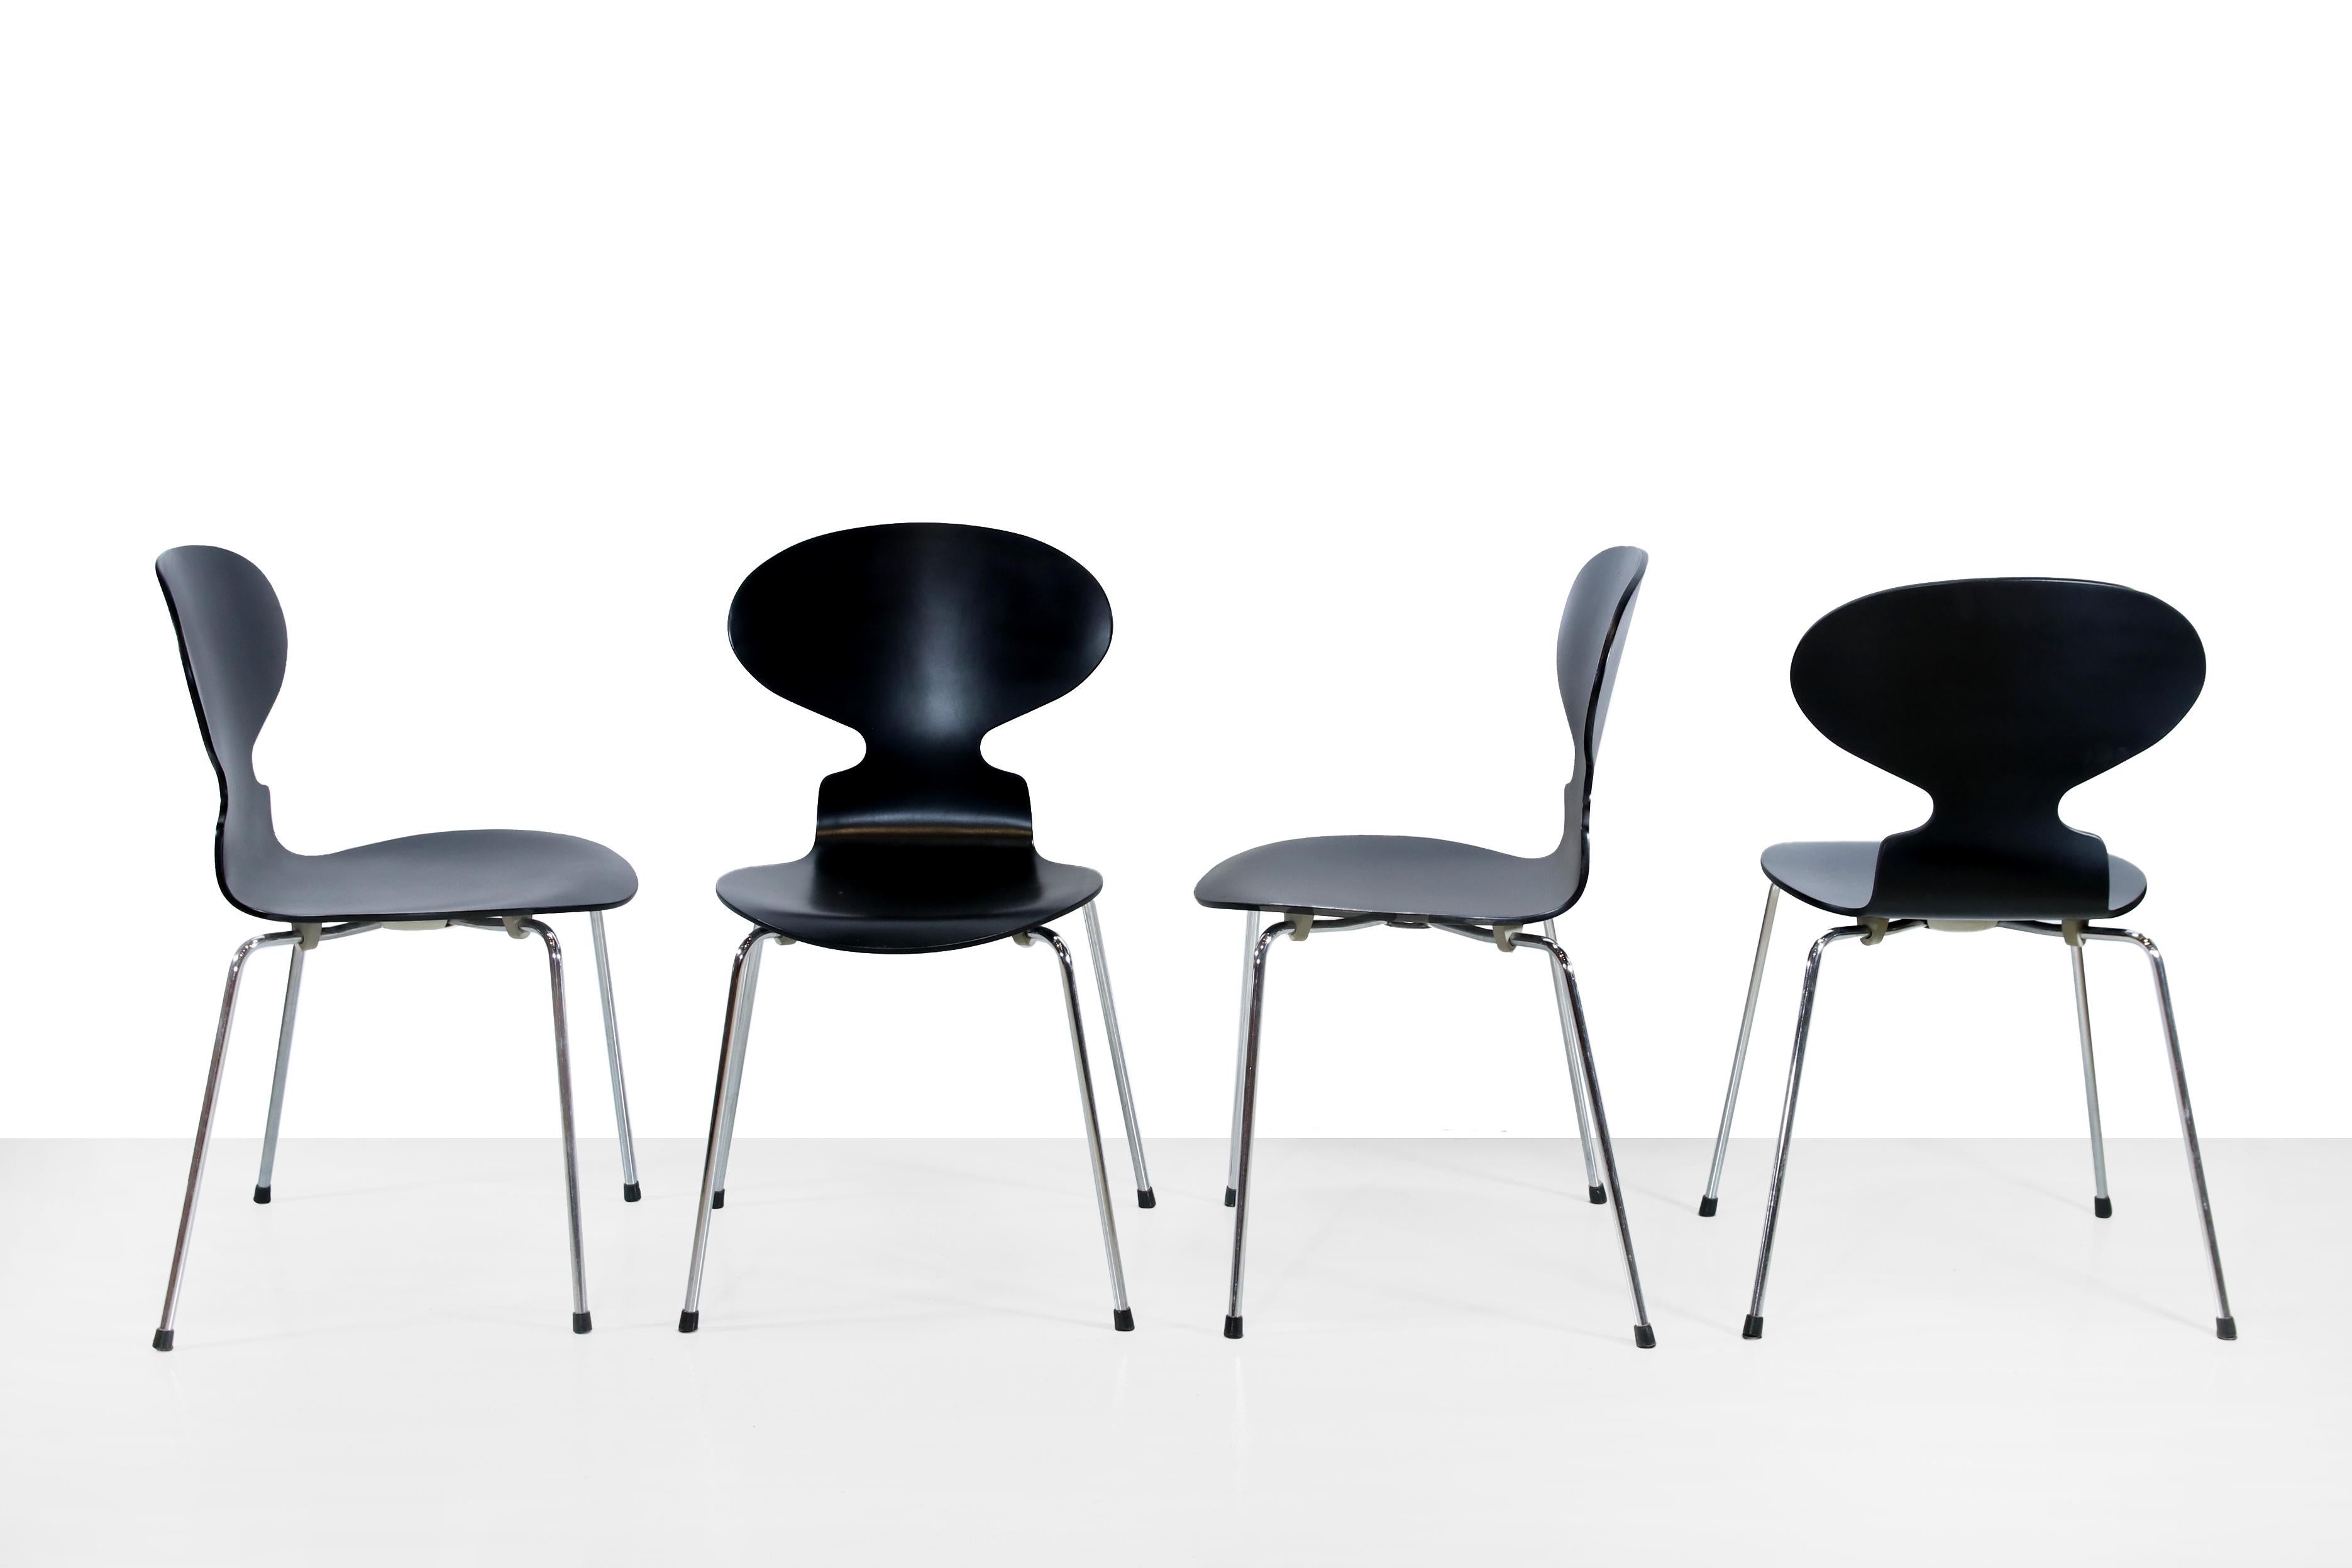 Vier schöne Stühle von Arne Jacobsen für Fritz Hansen. Der offizielle Name der Stühle lautet 